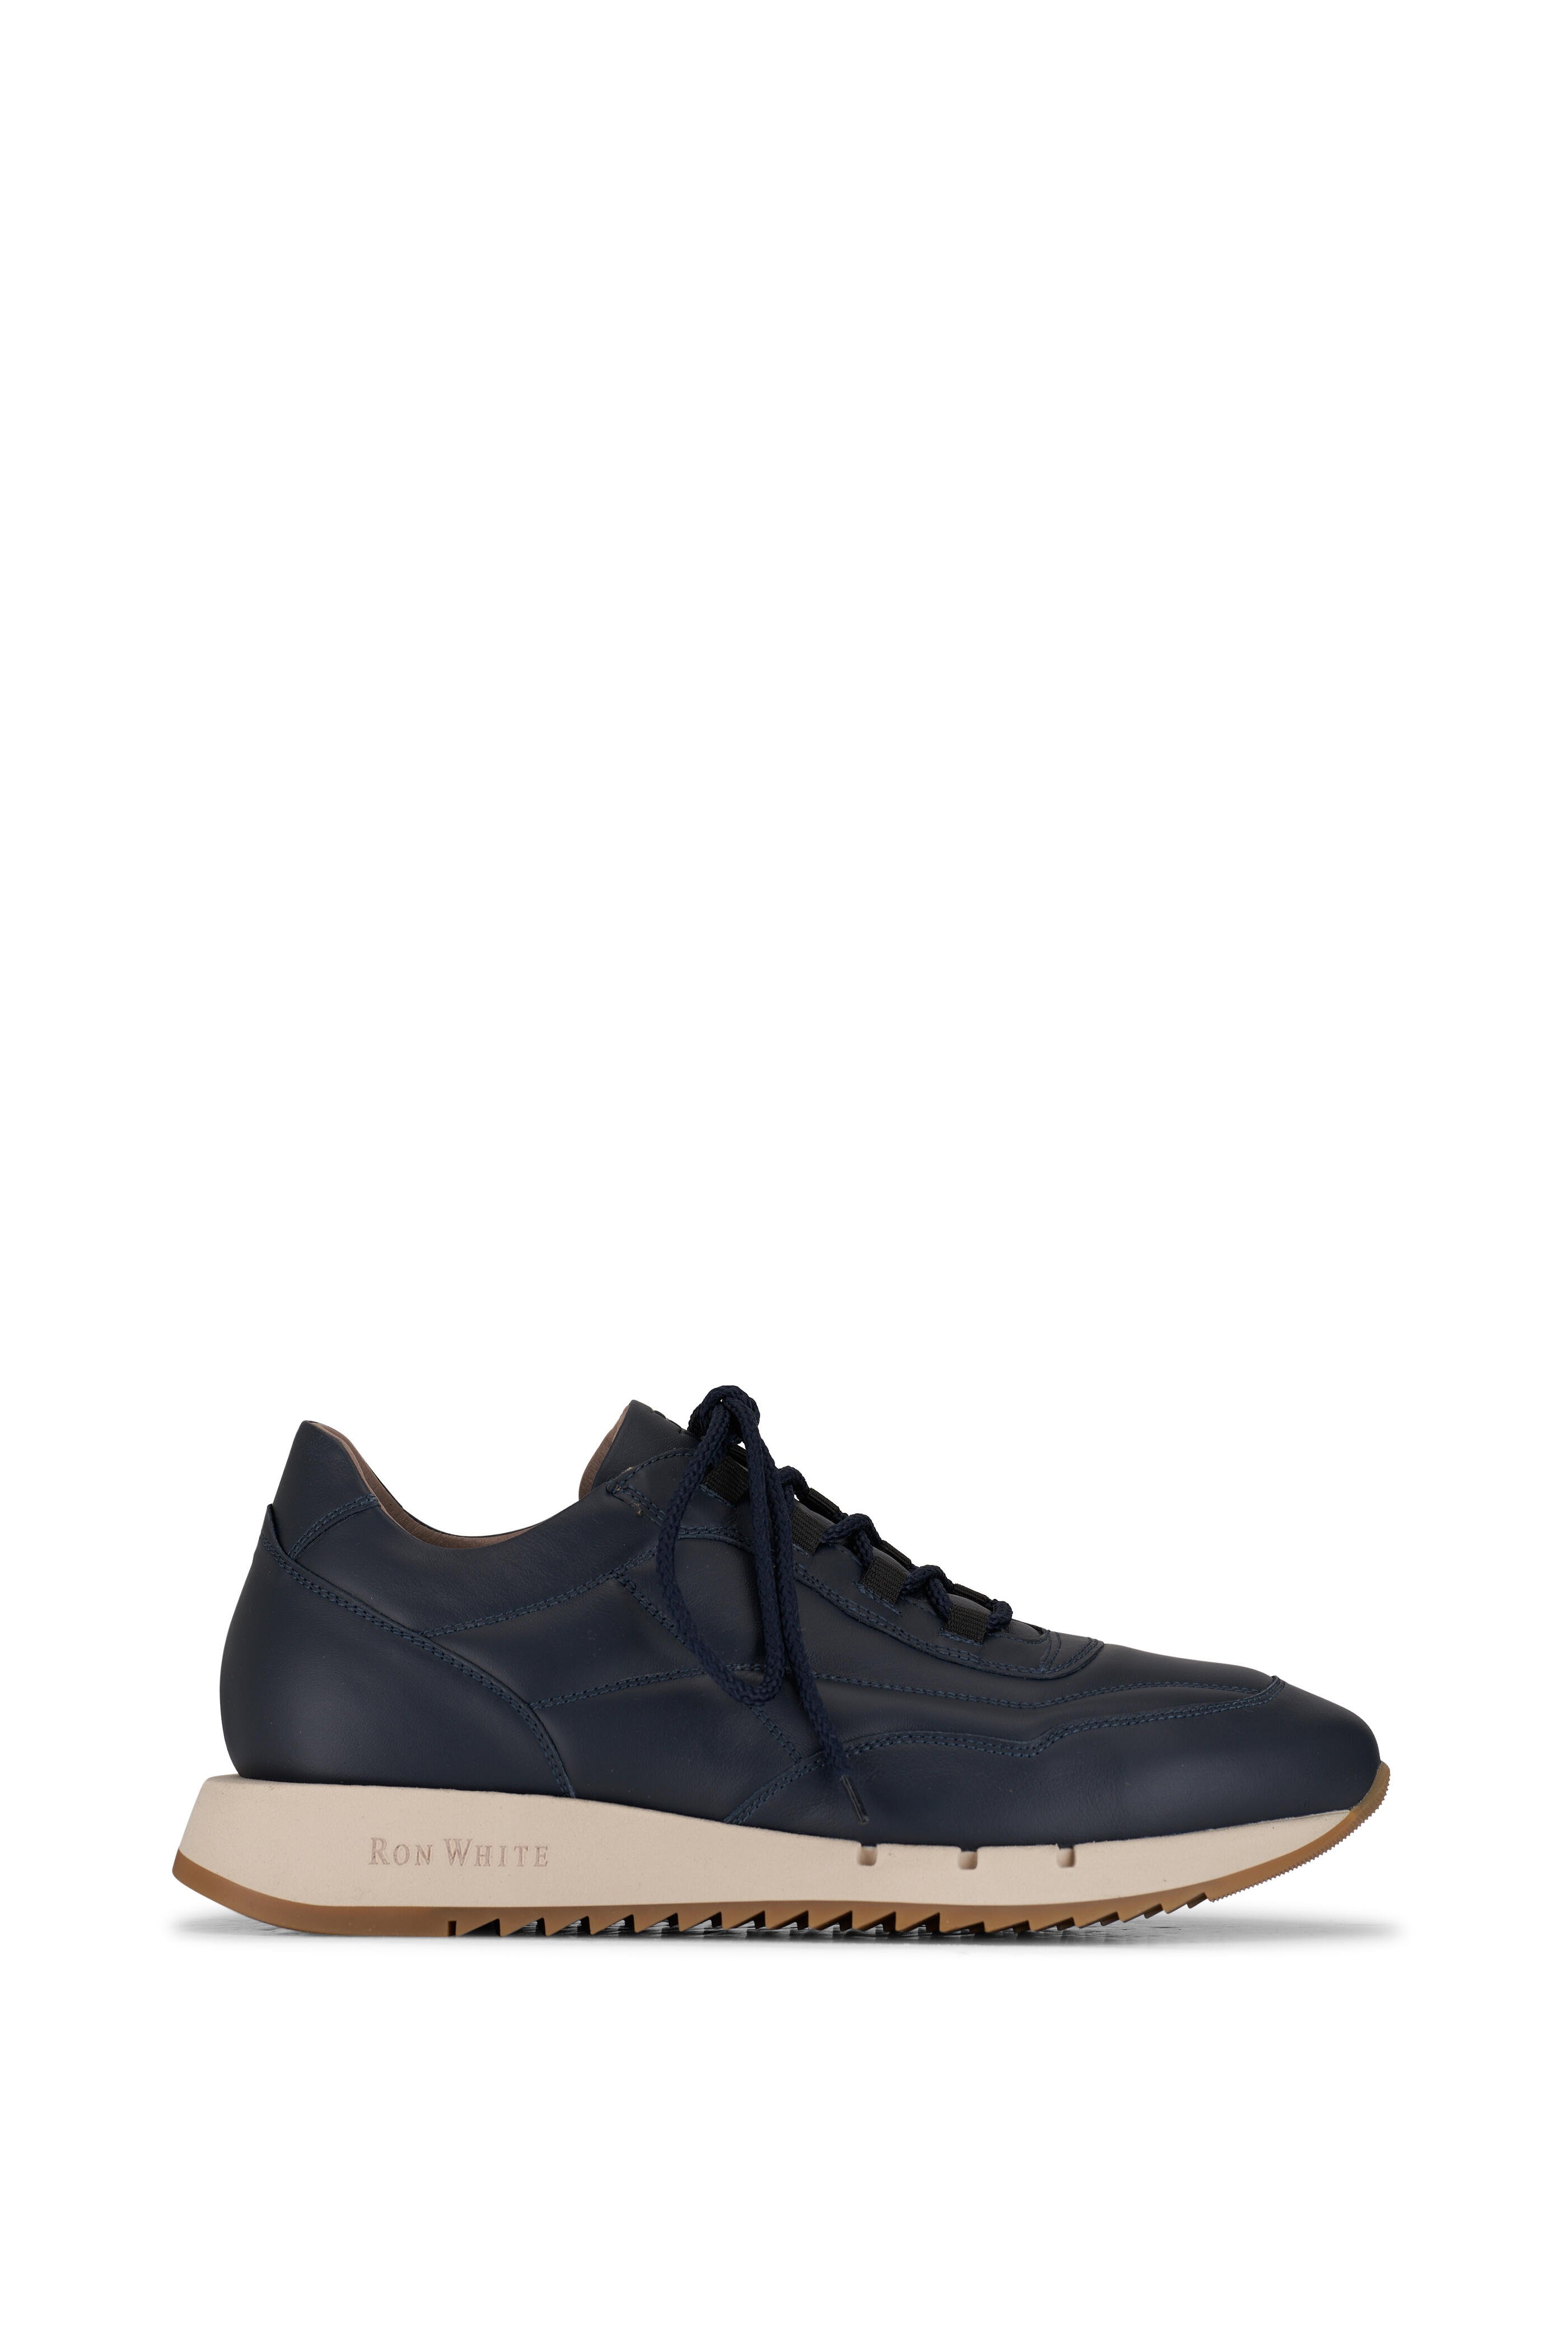 Ron White - Landon Navy Leather Sneaker | Mitchell Stores